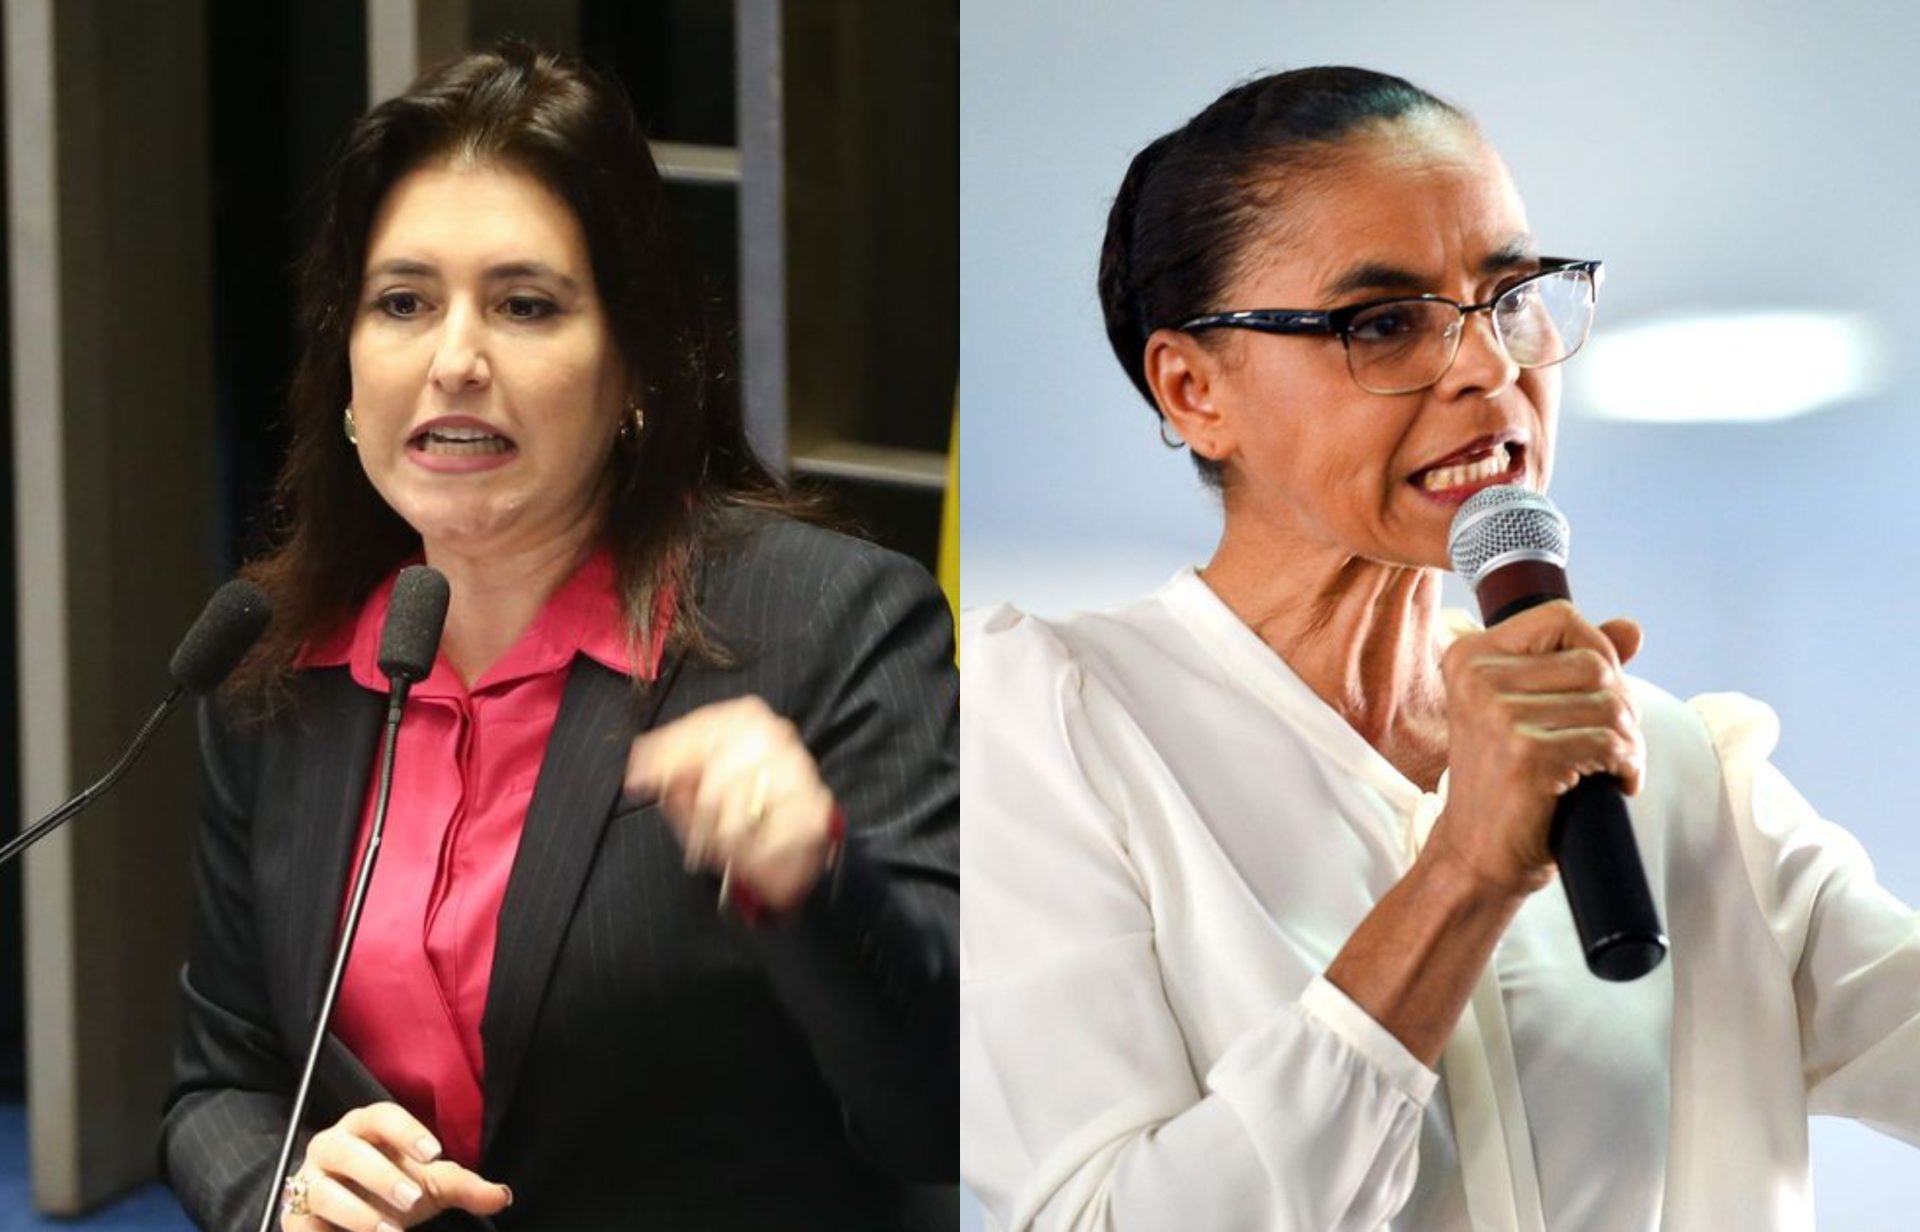 Nomes de Simone Tebet e Marina Silva estavam pautados por Lula para assumir ministério - Foto: Agência Brasil